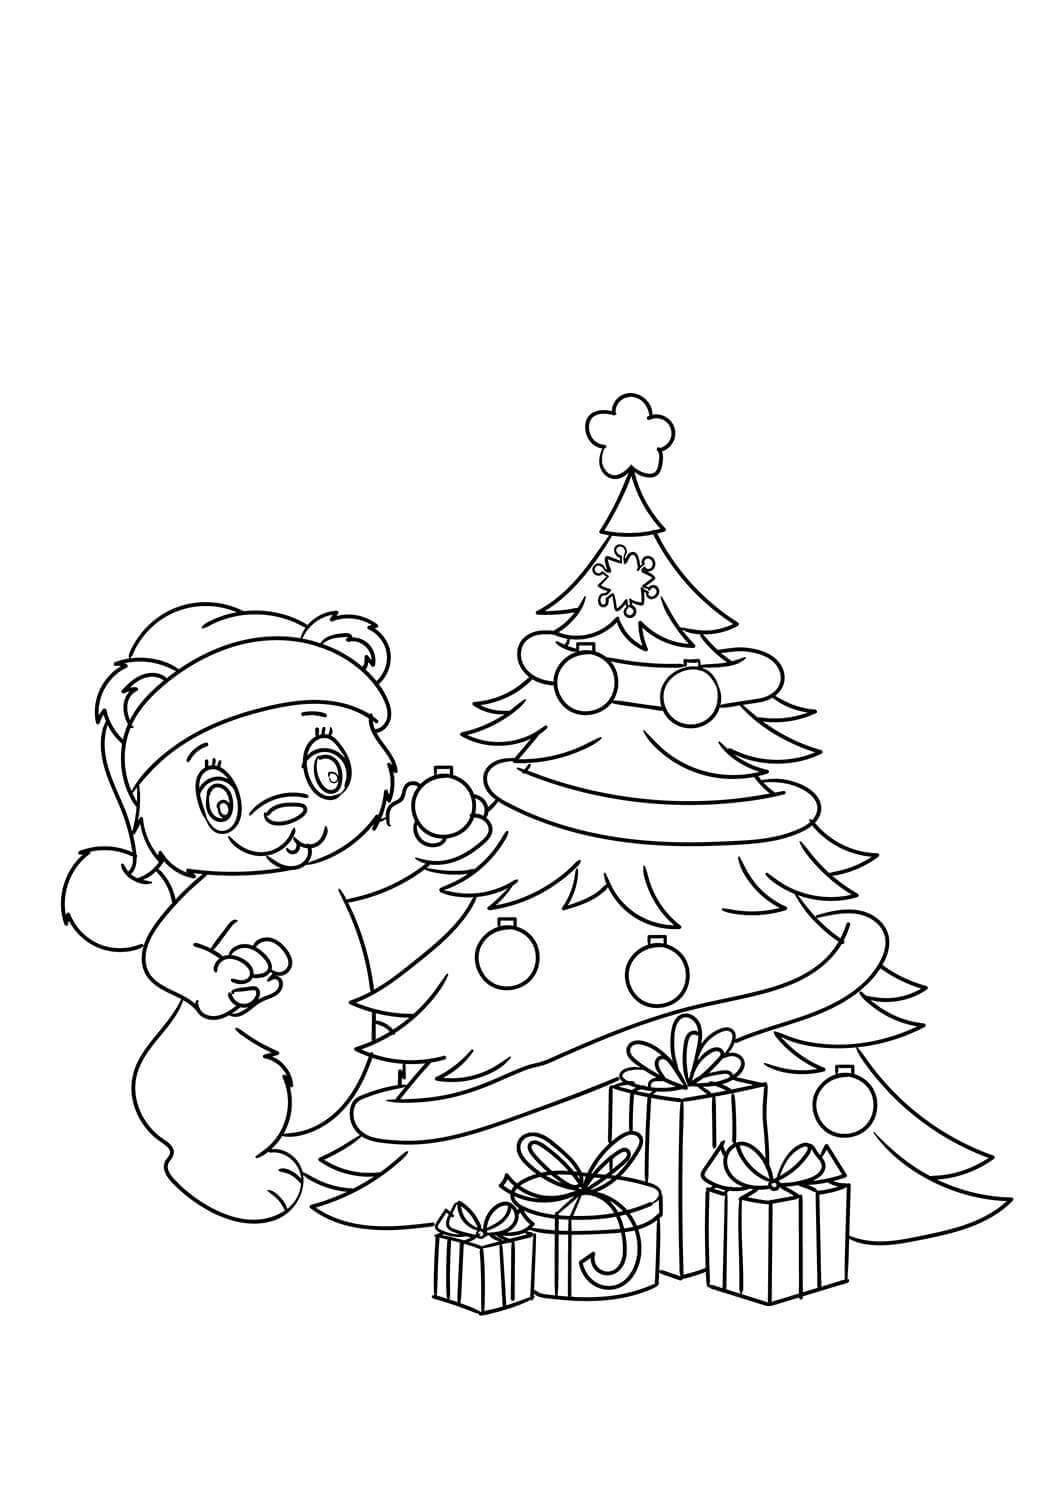 Teddy decorando el árbol de Navidad